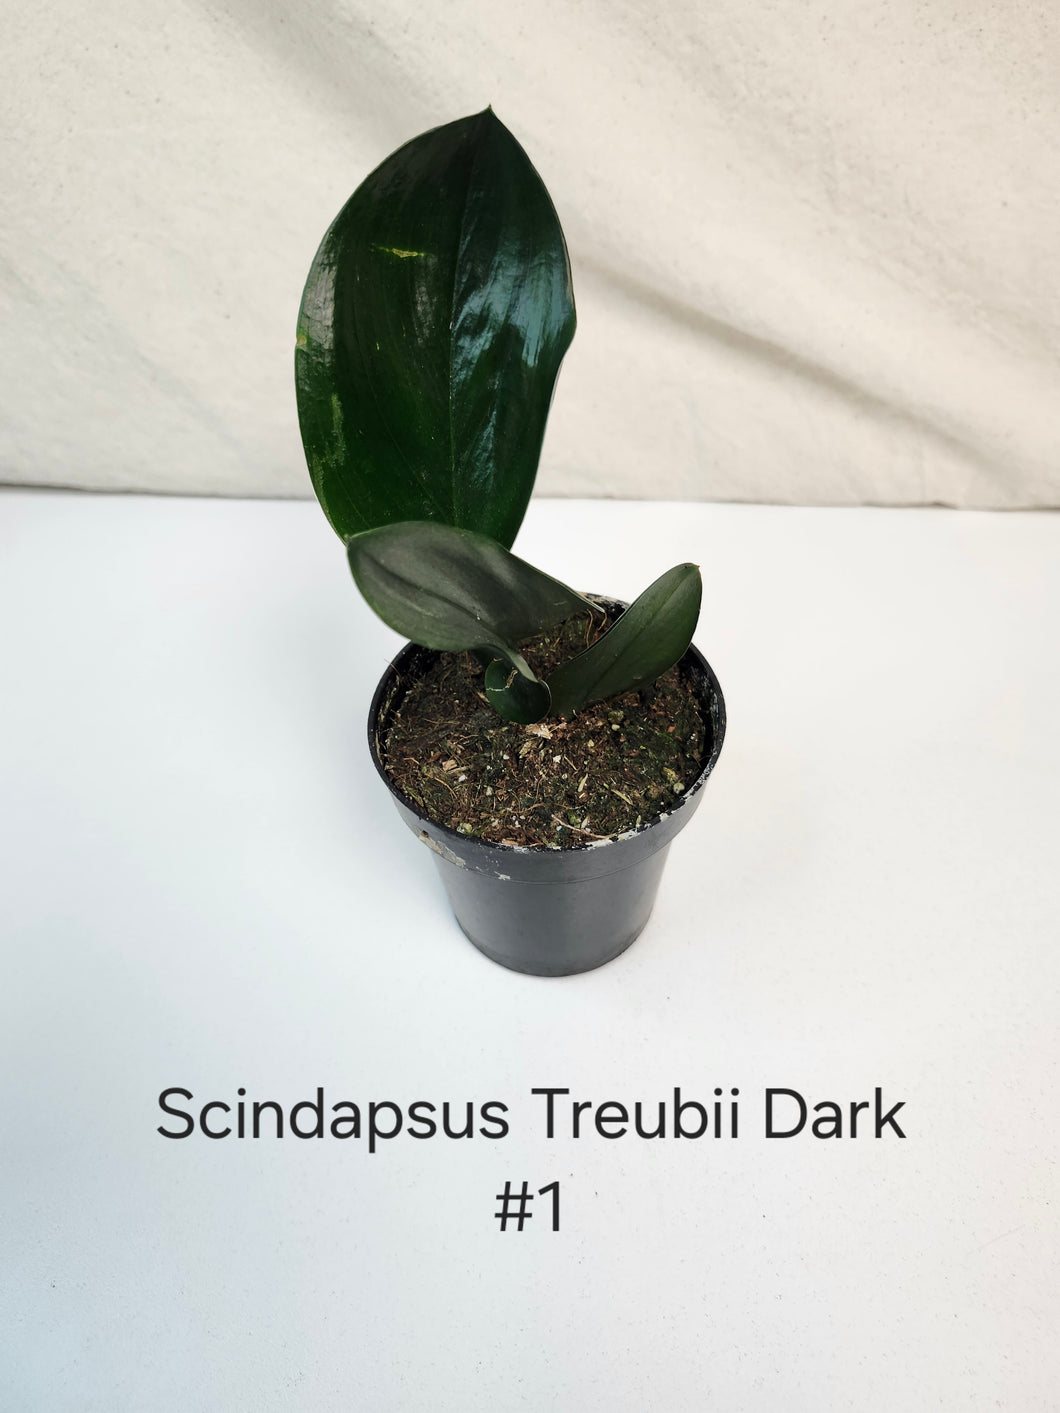 Scindapsus Treubii Dark Form #1